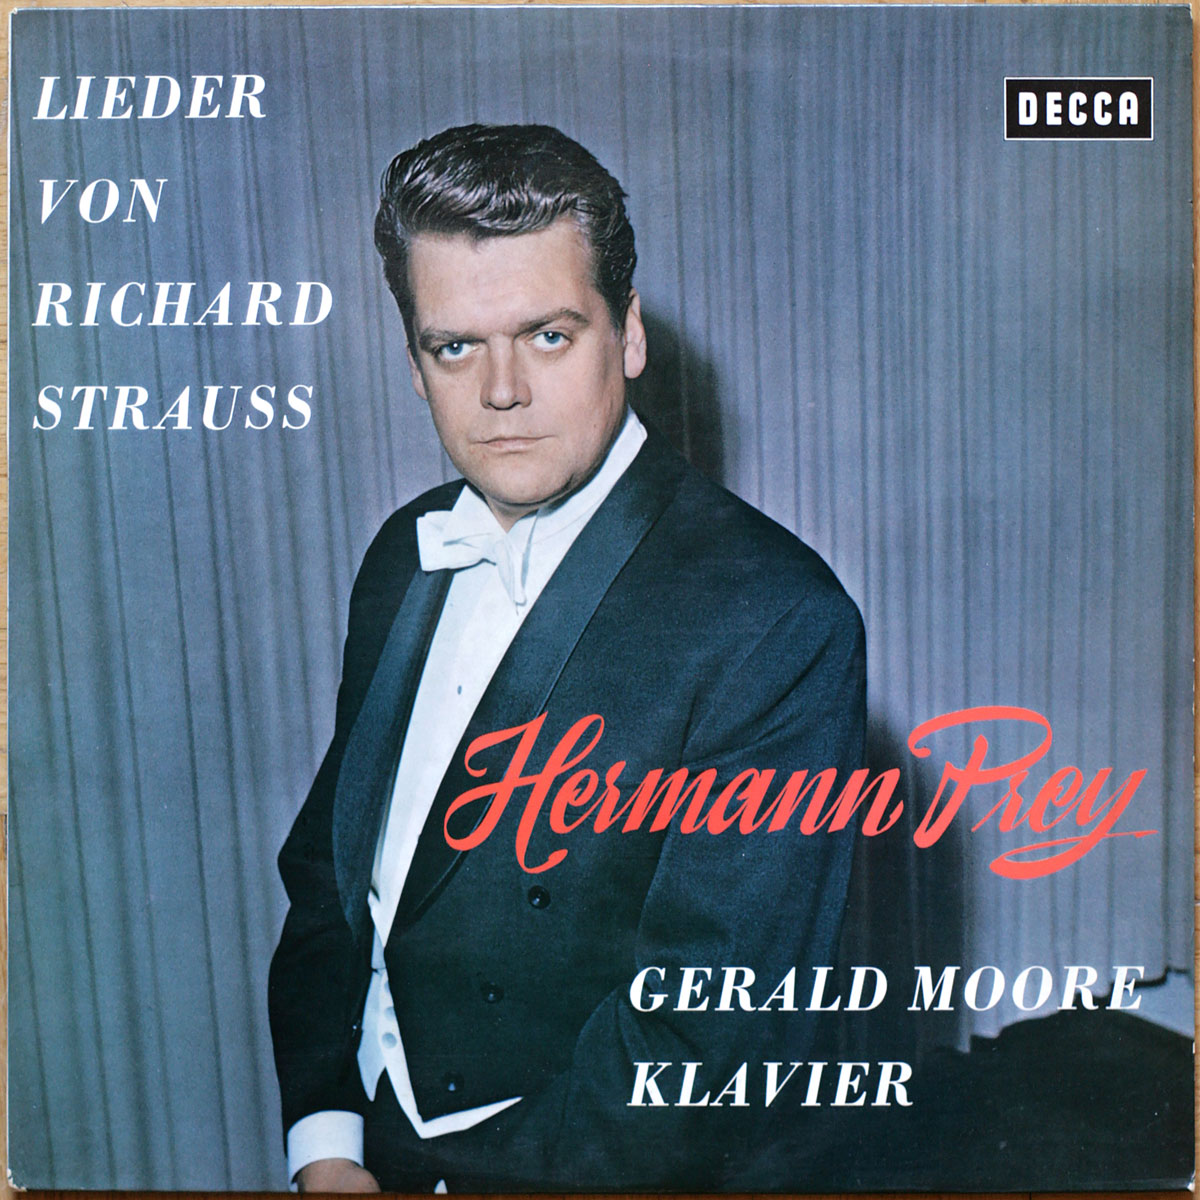 Strauss • Lieder von Richard Strauss • Decca SXL 21083-B • Hermann Prey • Gerald Moore